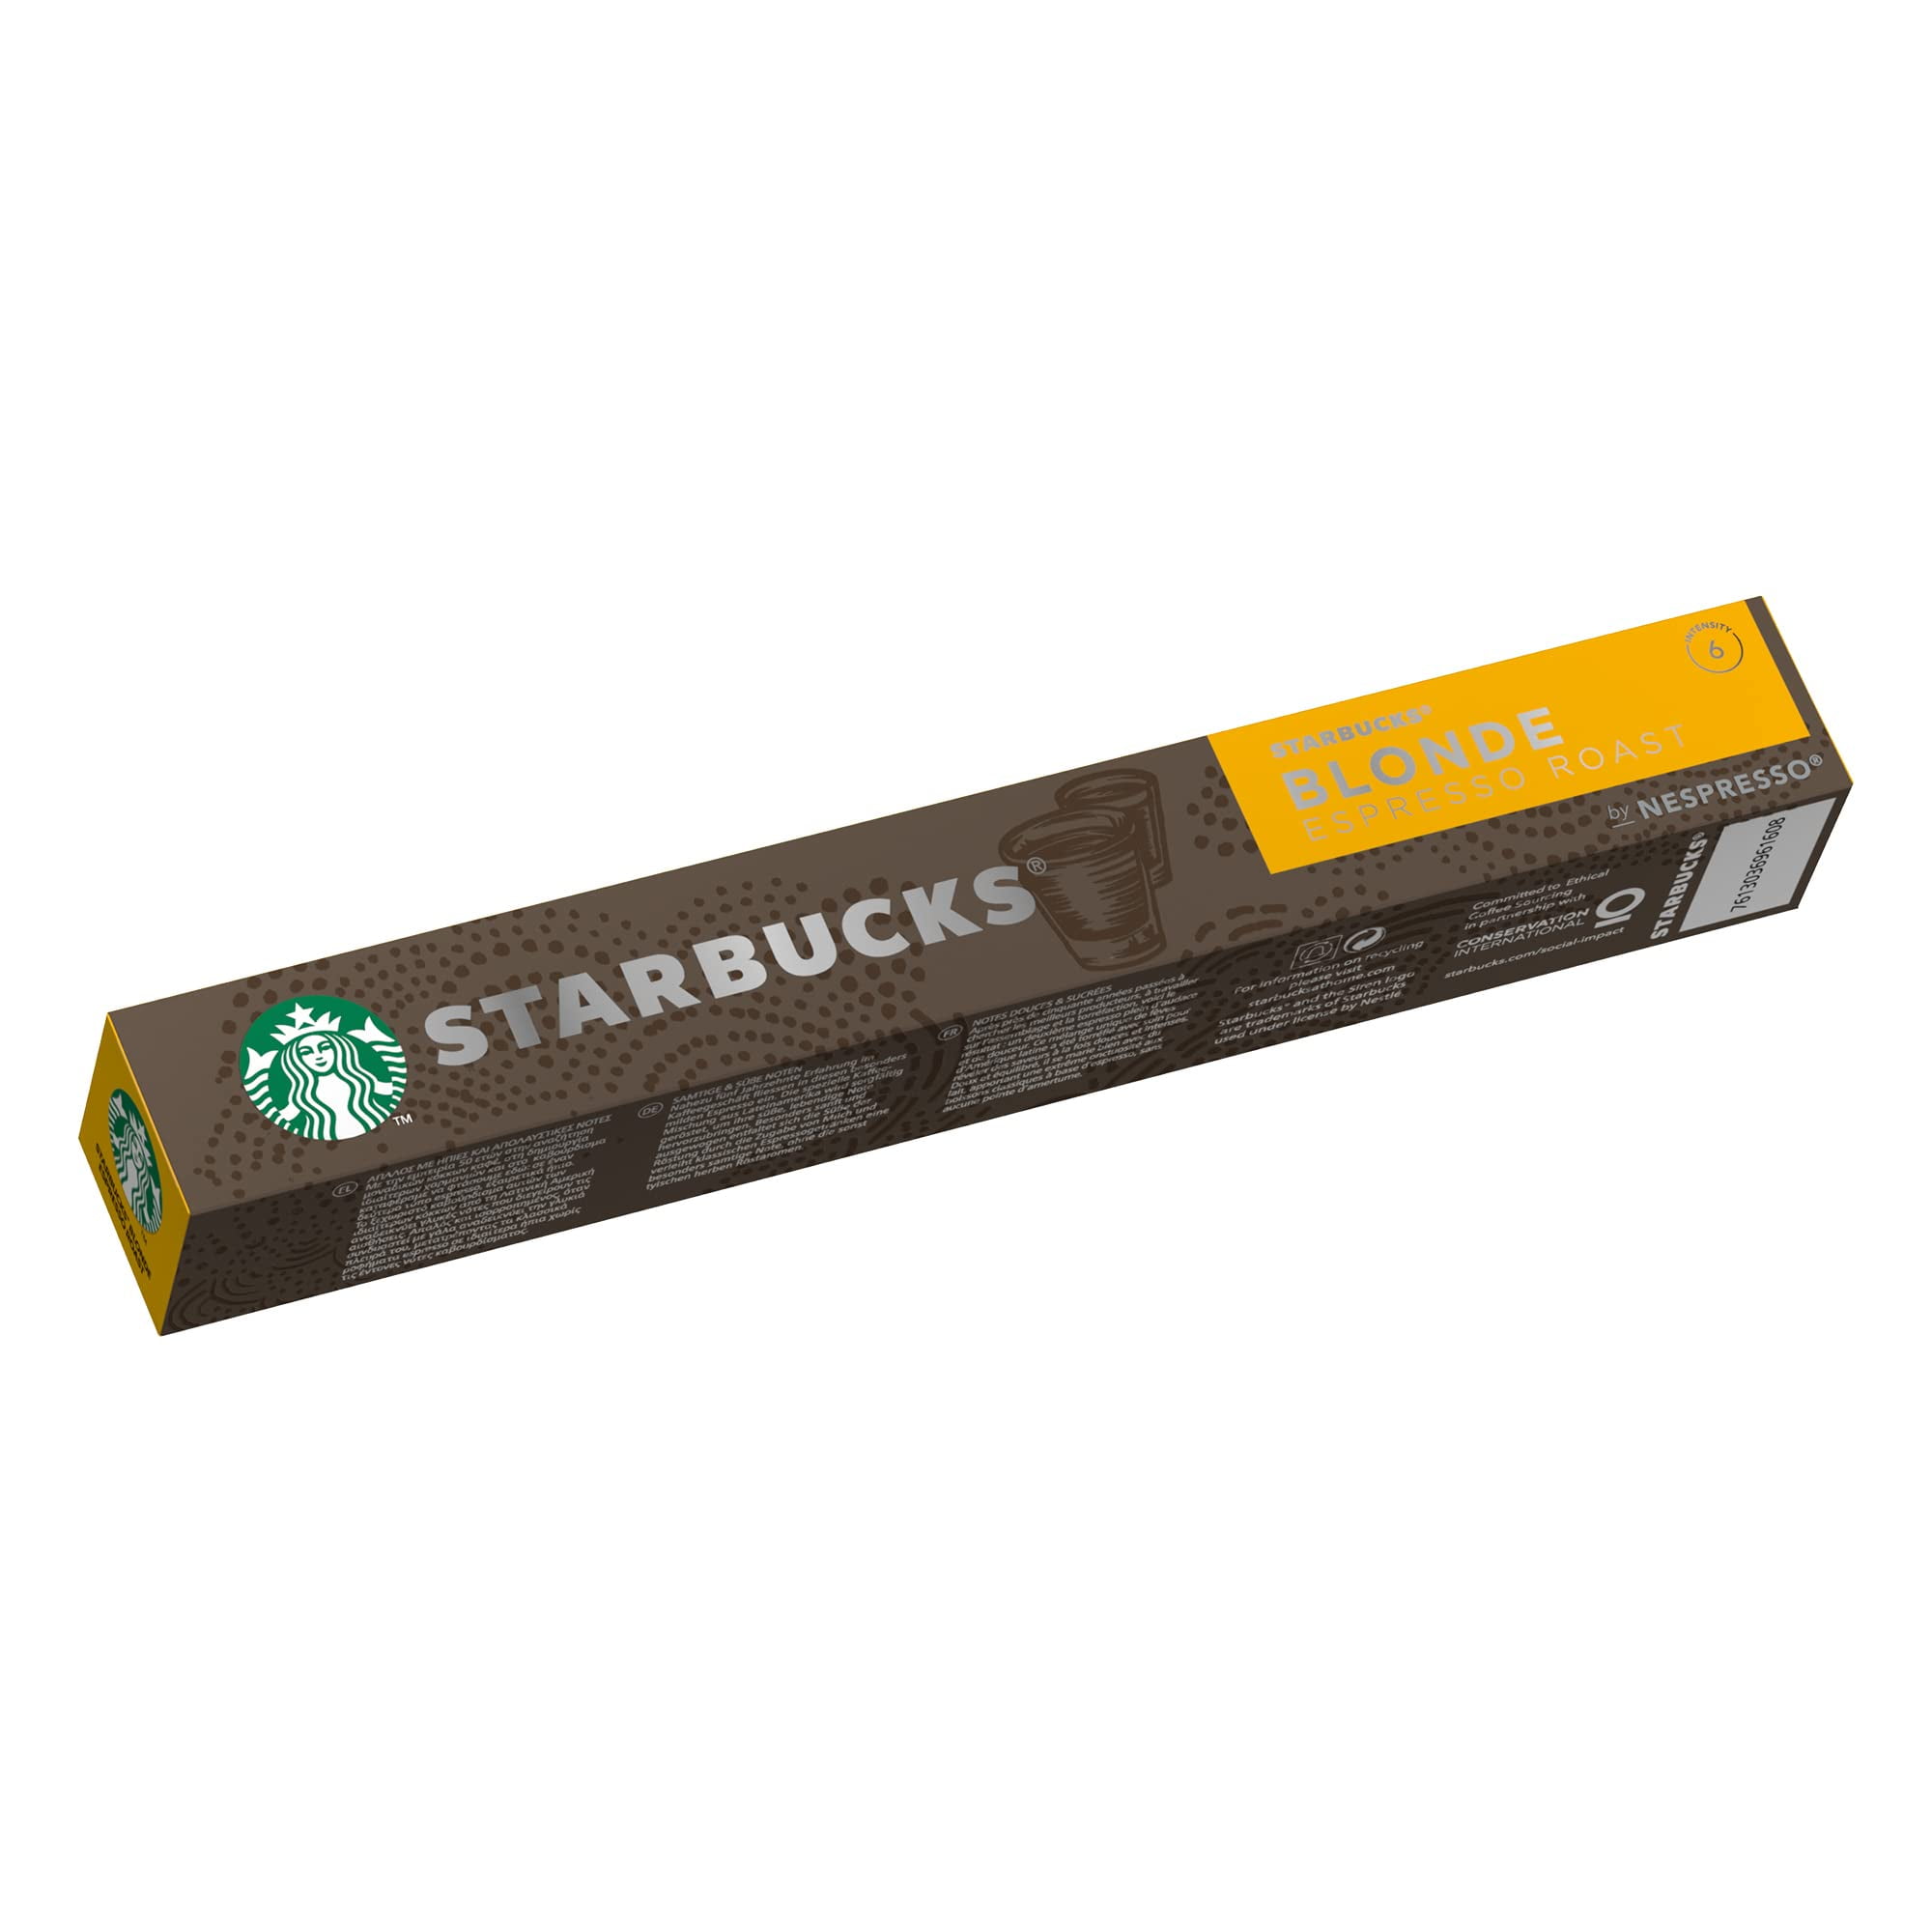 Café espresso roast en cápsulas Starbucks compatible con Nespresso